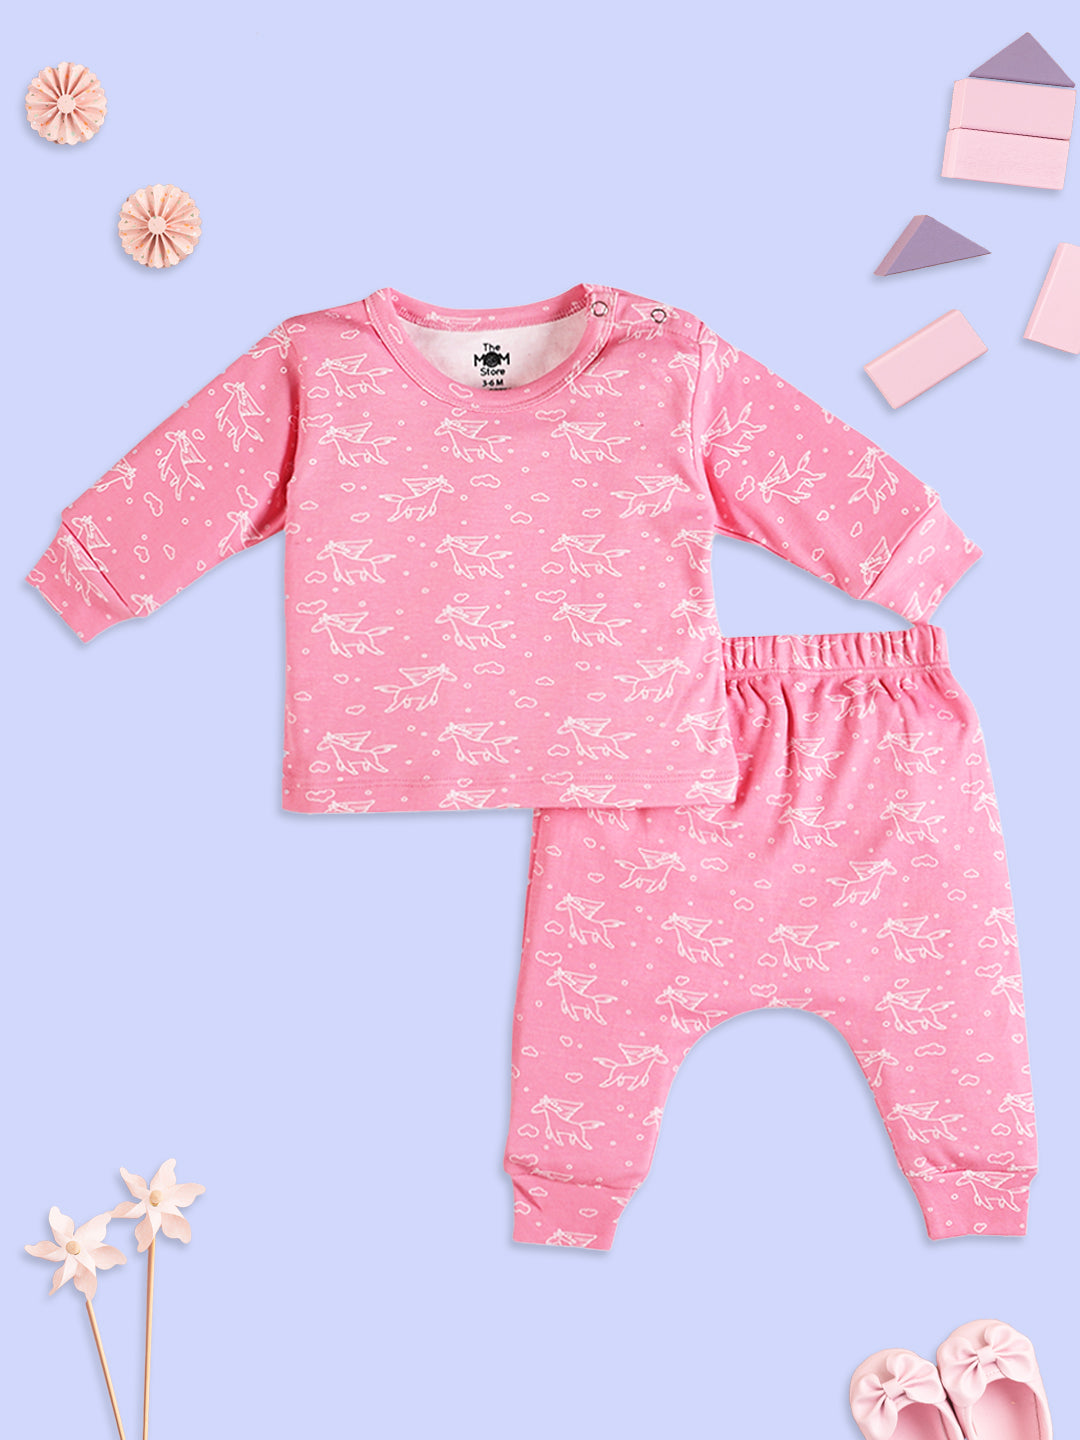 Fairyland Infant Pajama Set